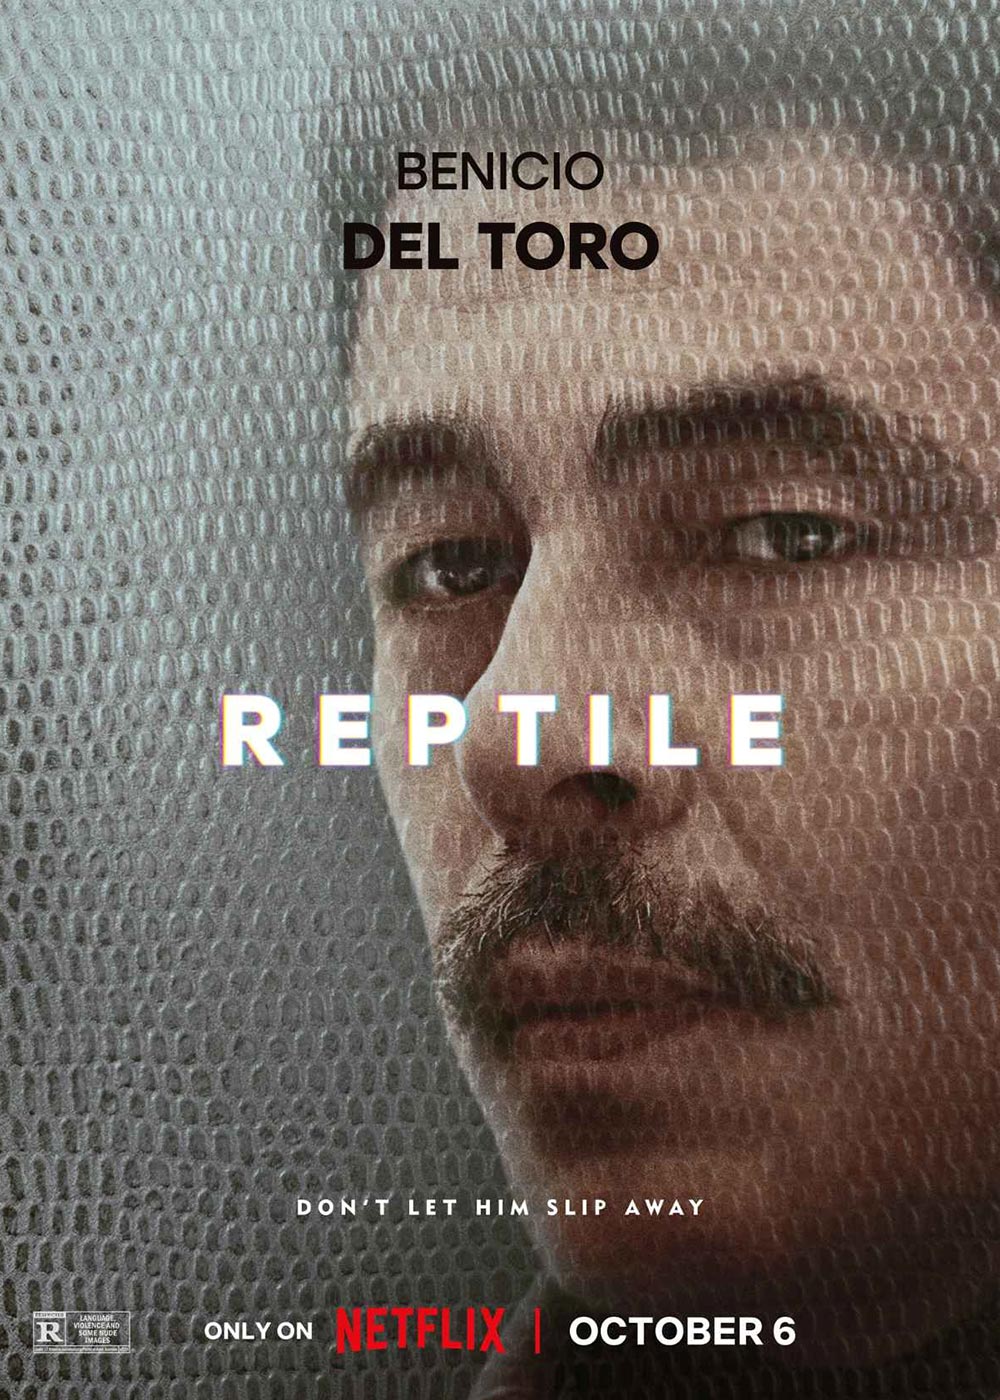 Reptile Cast Guide: Justin Timberlake, Benicio del Toro, Alicia